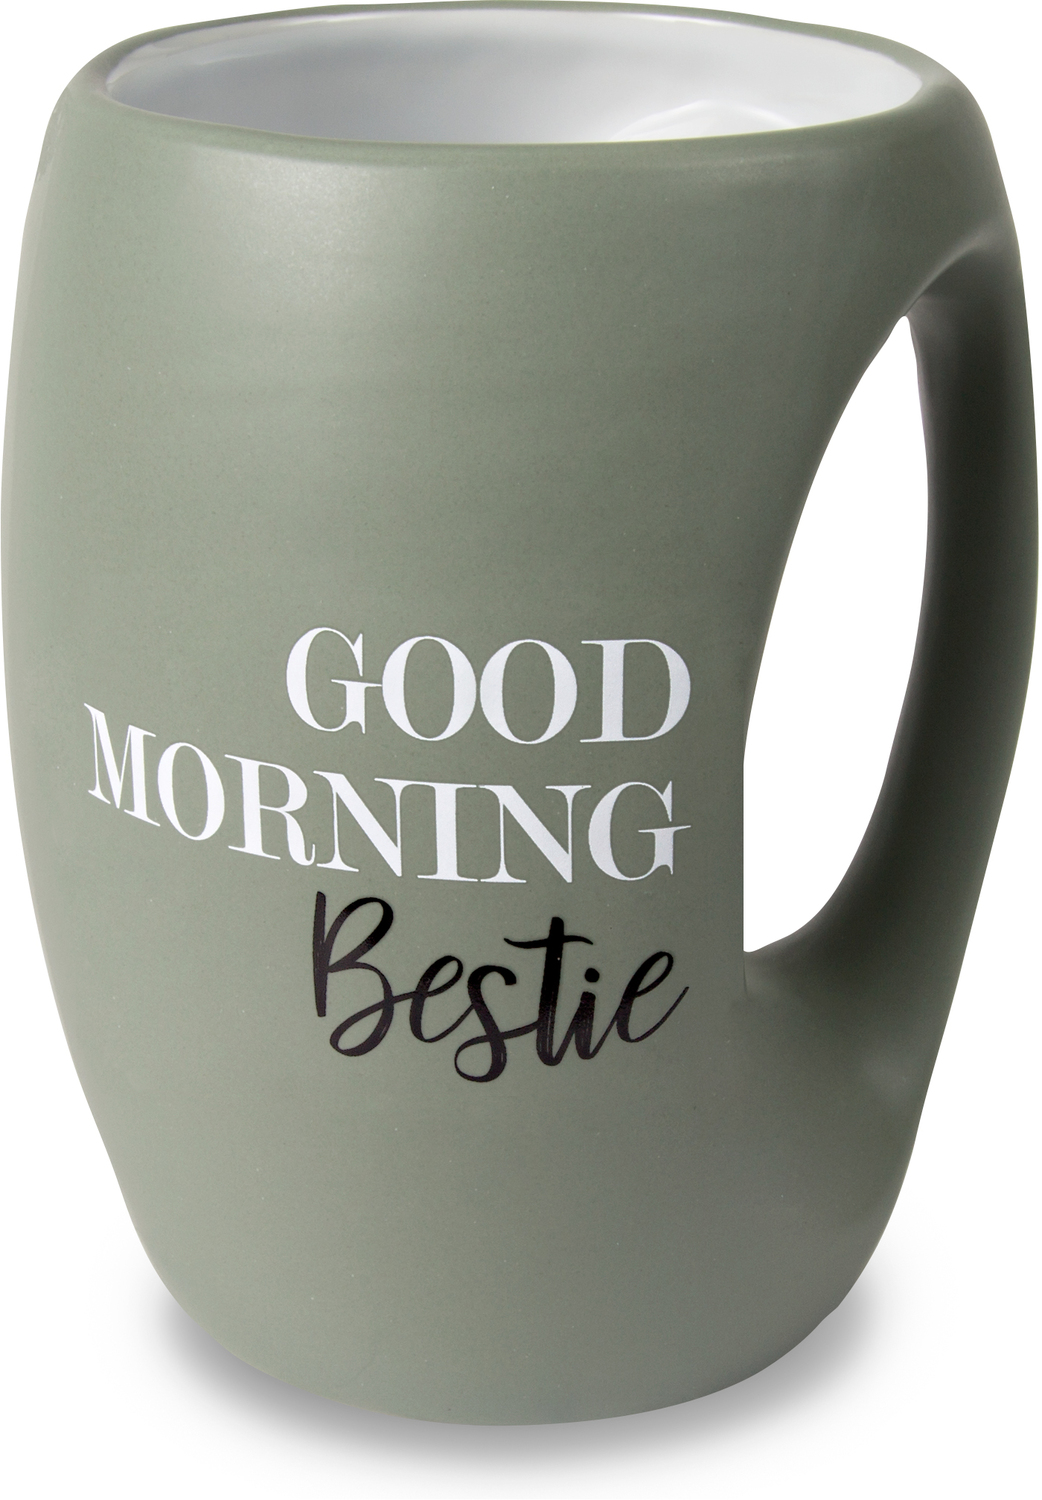 Bestie by Good Morning - Bestie - 16 oz Cup